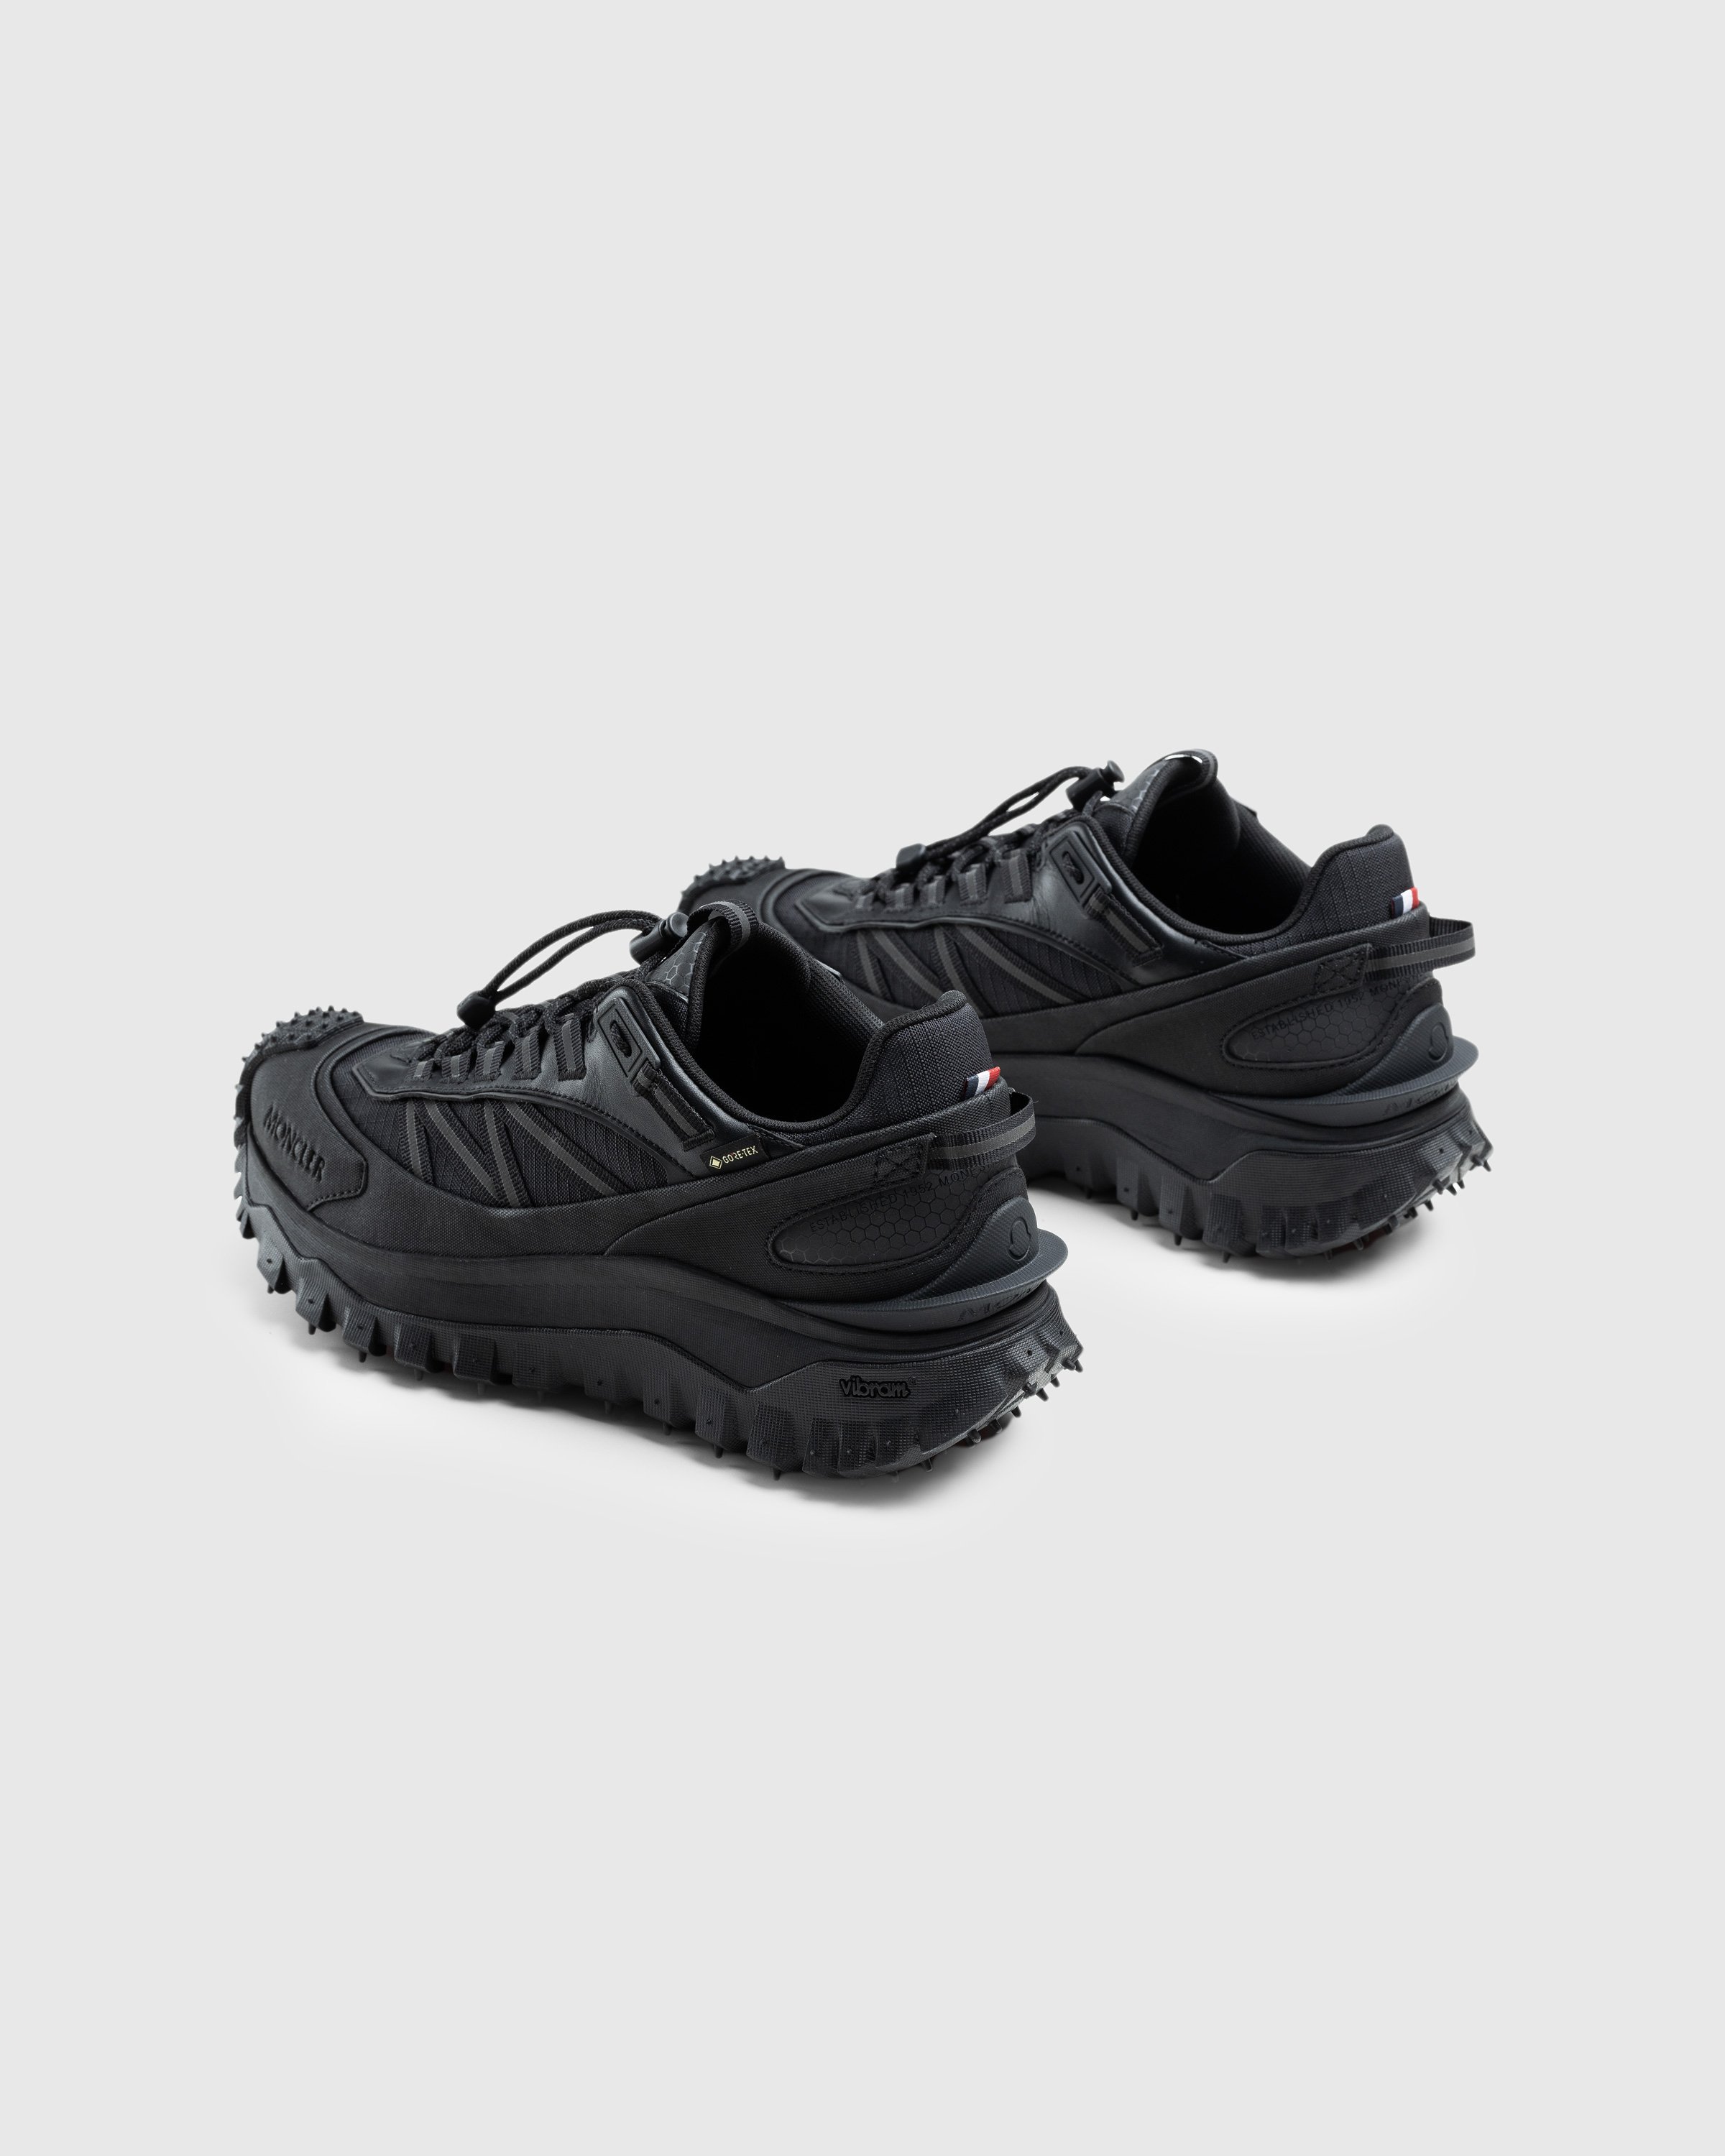 Moncler - Trailgrip Gtx Low Top Sneakers Black - Footwear - Black - Image 4